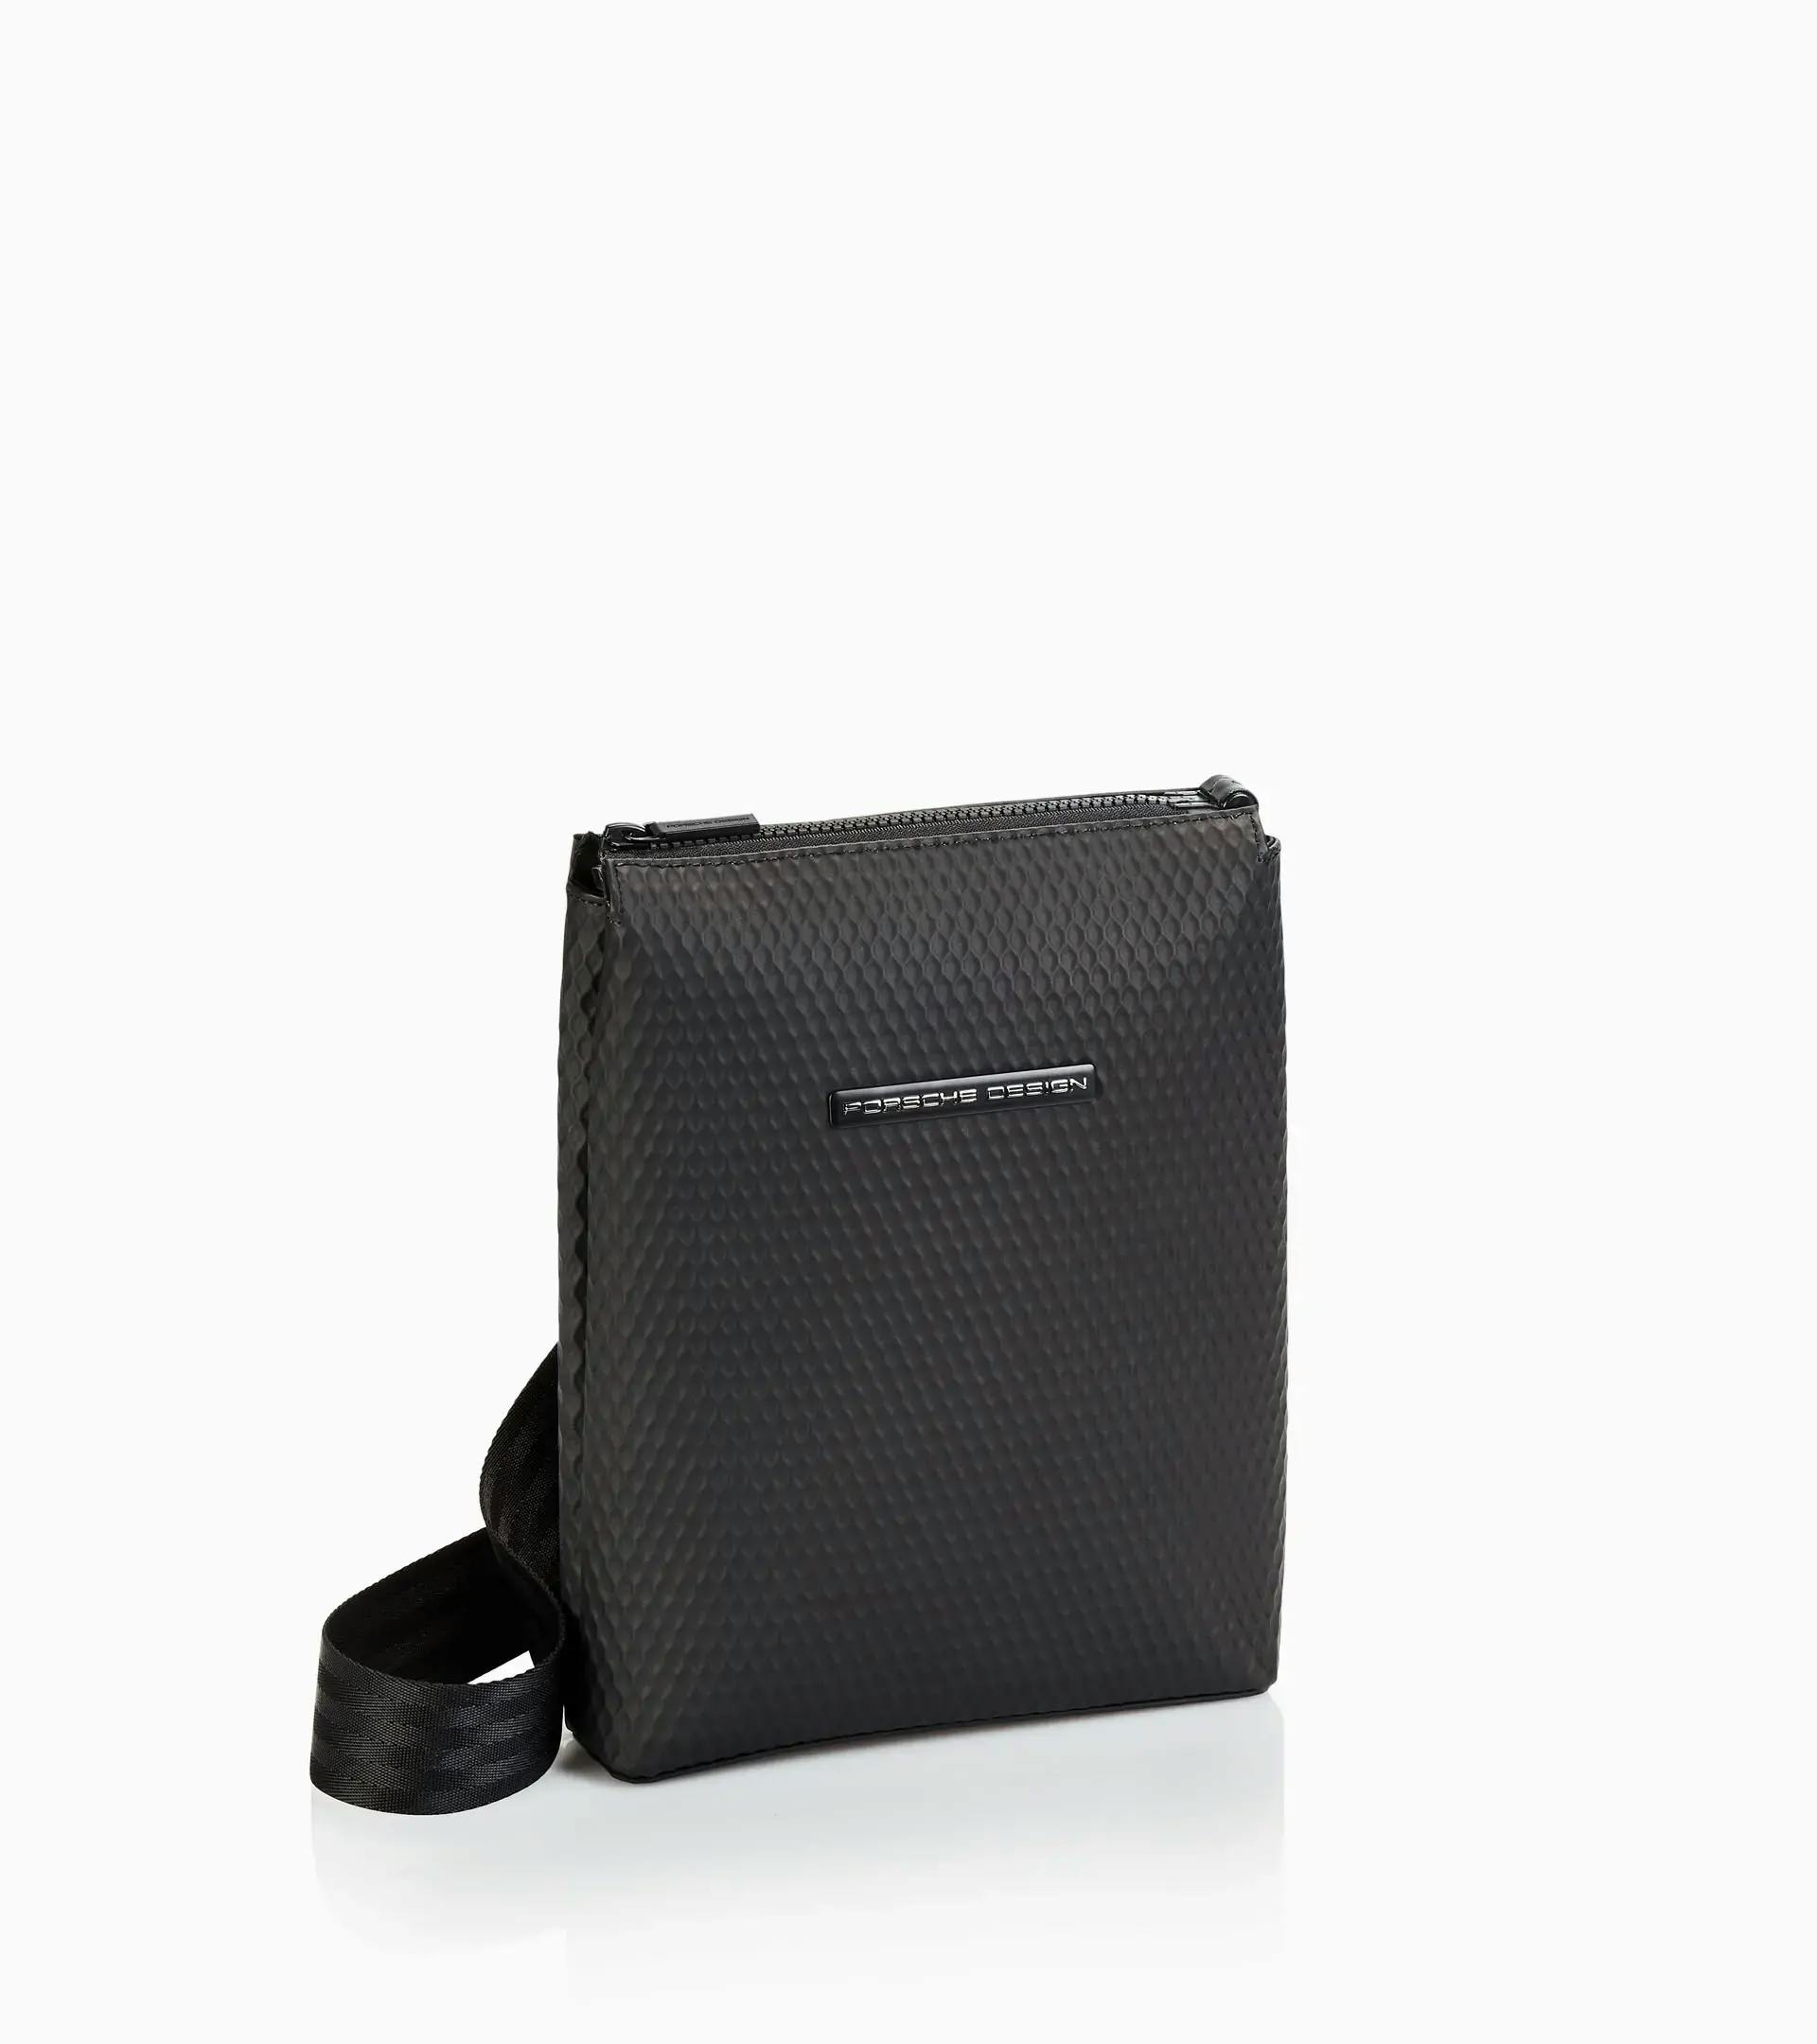 Fashionable Shell Design Zipper Bag With Adjustable Shoulder Strap